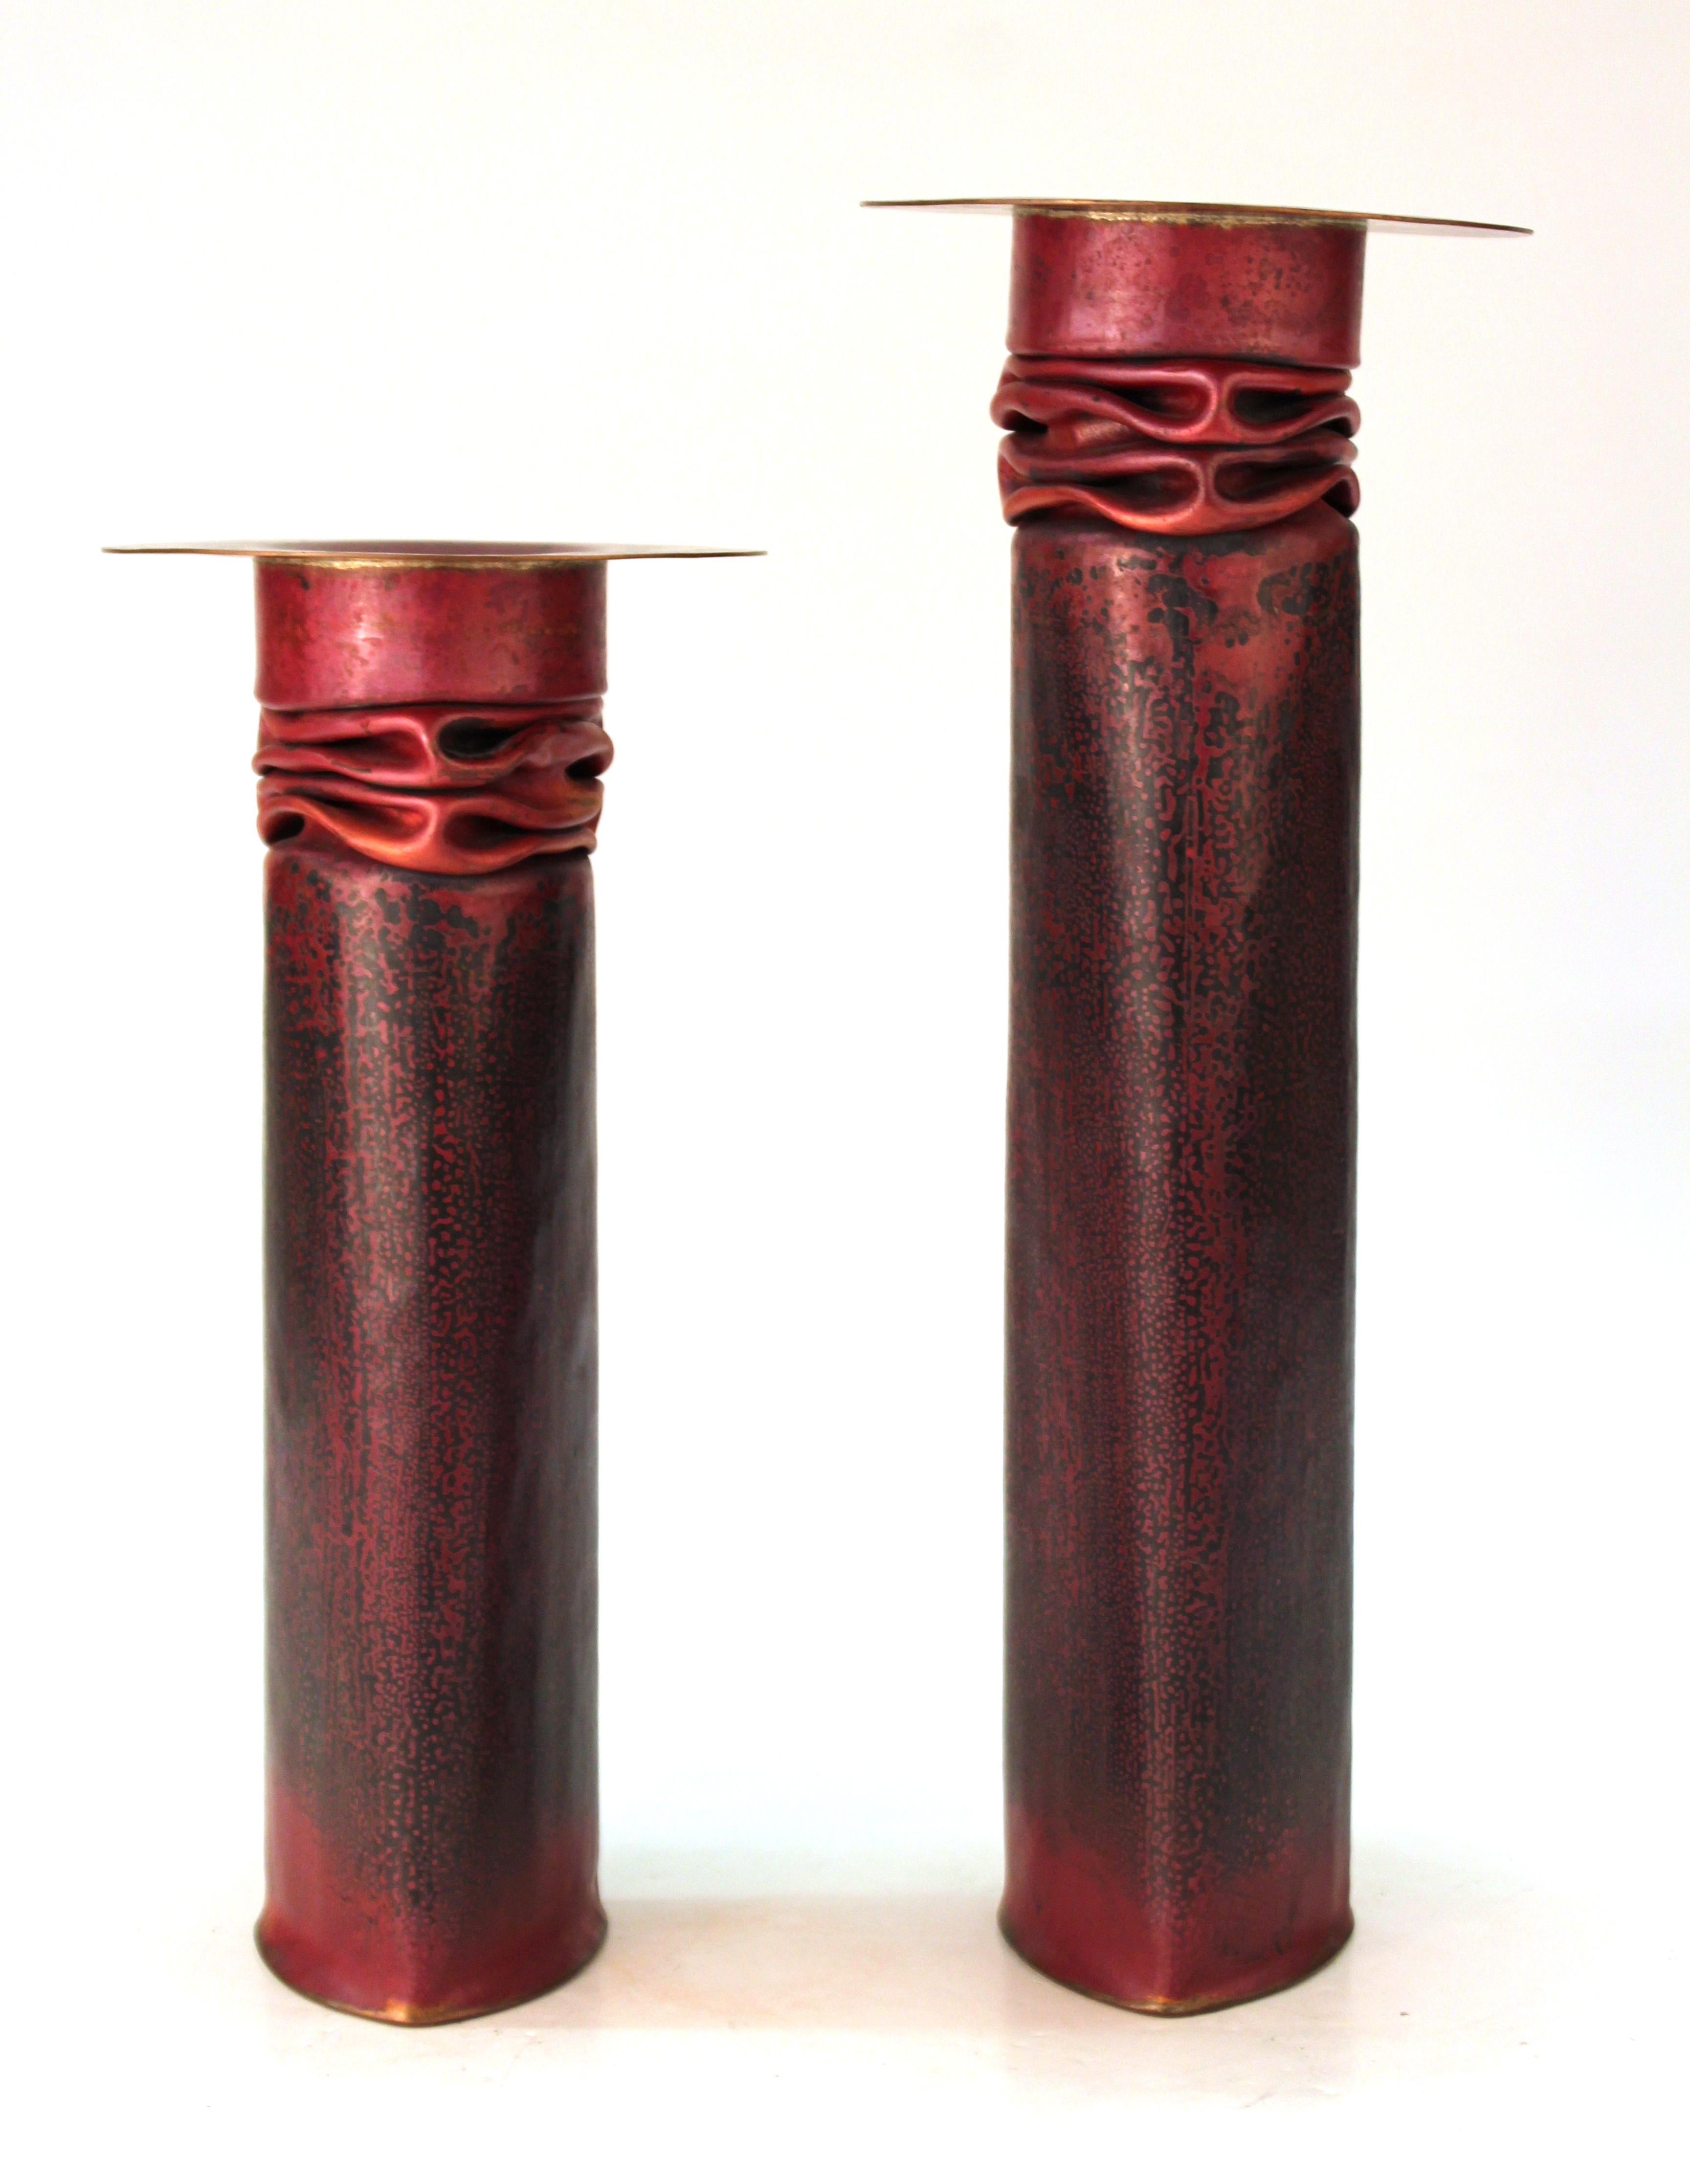 Paire de bougeoirs modernistes américains du célèbre orfèvre Thomas Roy Markusen, réalisés en cuivre avec une rare patine acide rouge. La paire a été fabriquée à la fin des années 1970 ou au début des années 1980 aux États-Unis et porte les marques